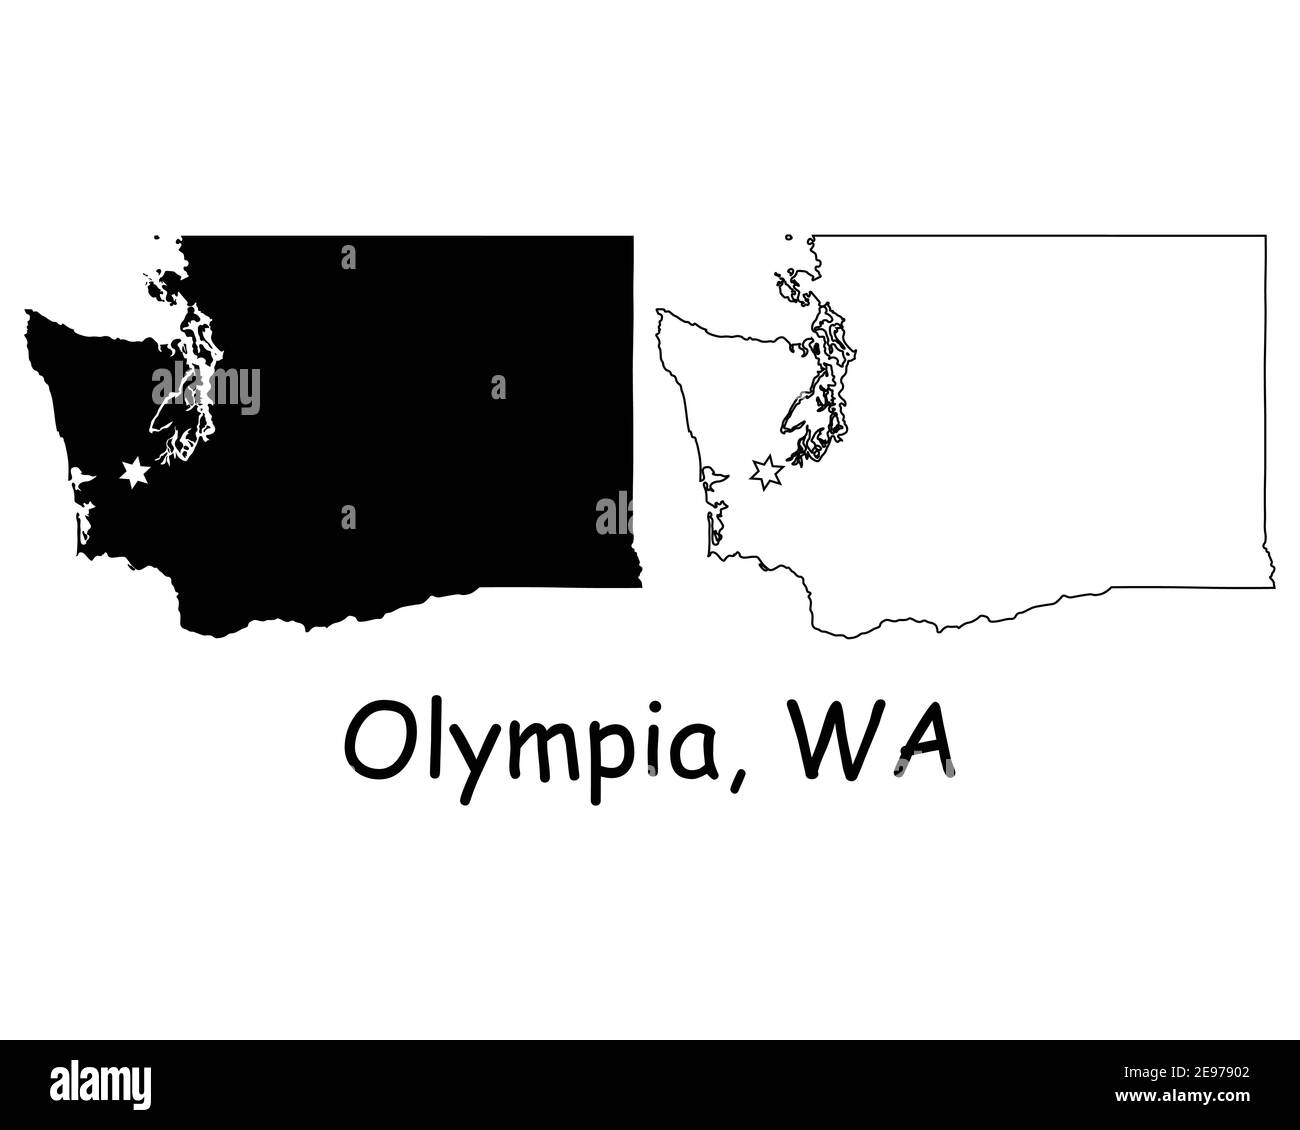 Washington WA State Map USA mit Capital City Star in Olympia. Schwarze Silhouette und umreißen isolierte Karten auf weißem Hintergrund. EPS-Vektor Stock Vektor